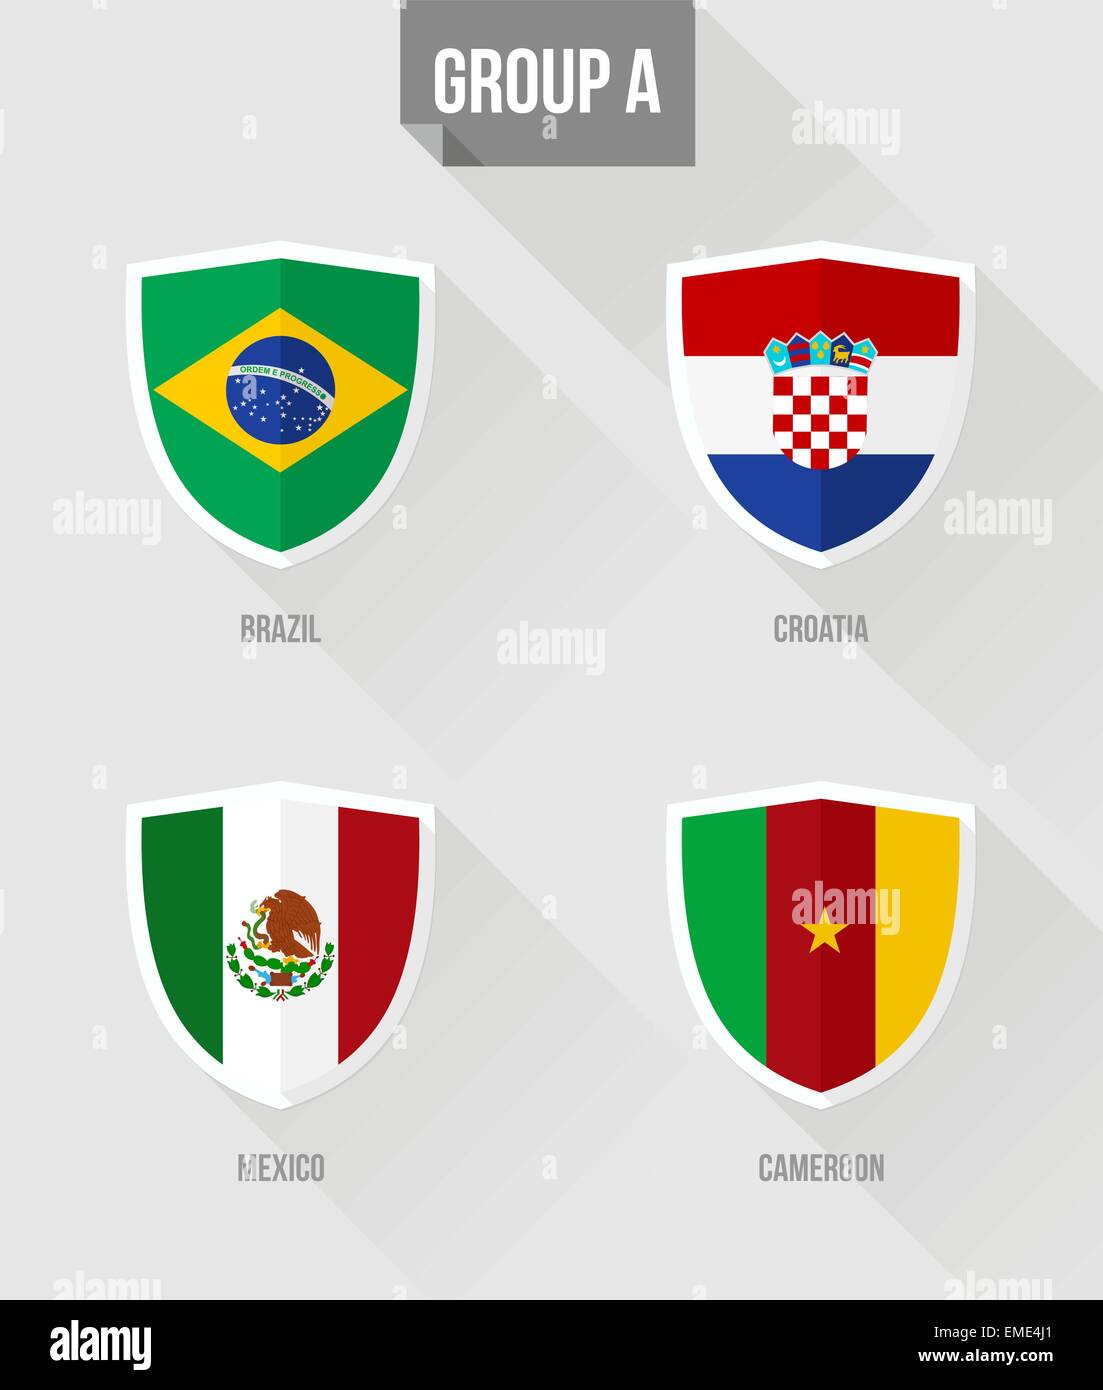 Brasilien Fussball Weltmeisterschaft 2014 Gruppe A Fahnen Stock Vektor